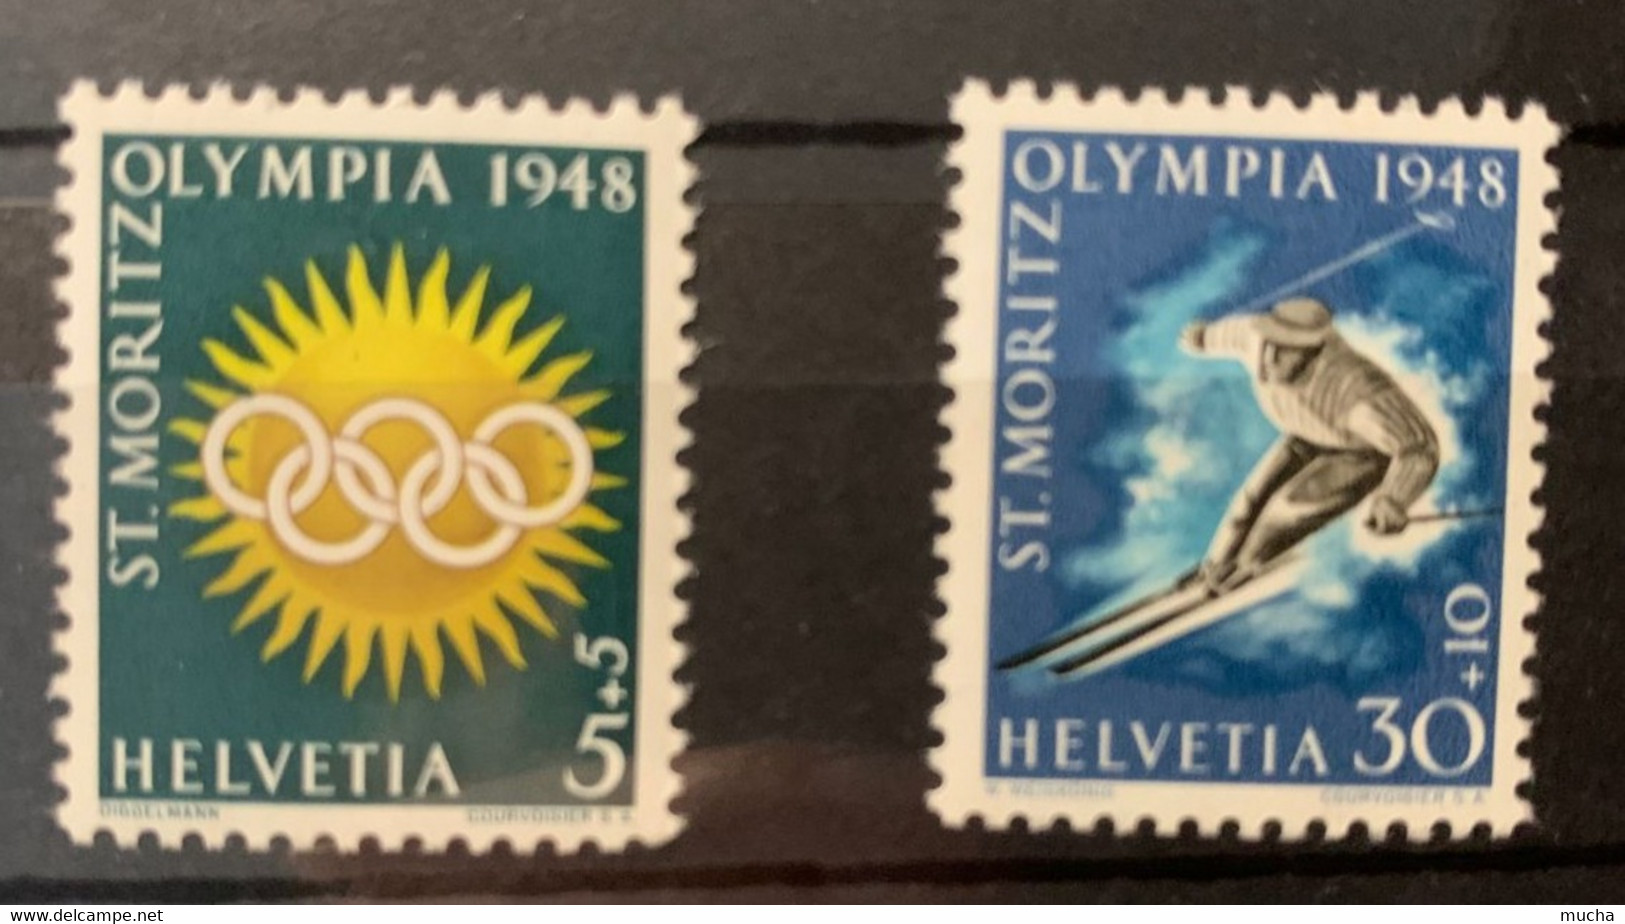 11104 -  Suisse  Jeux De St-Moritz 1948 ** Neuf MNH Nos 25x & 28x Papier Mêlé Bleu, Rouge & Jaune - Hiver 1948: St-Moritz